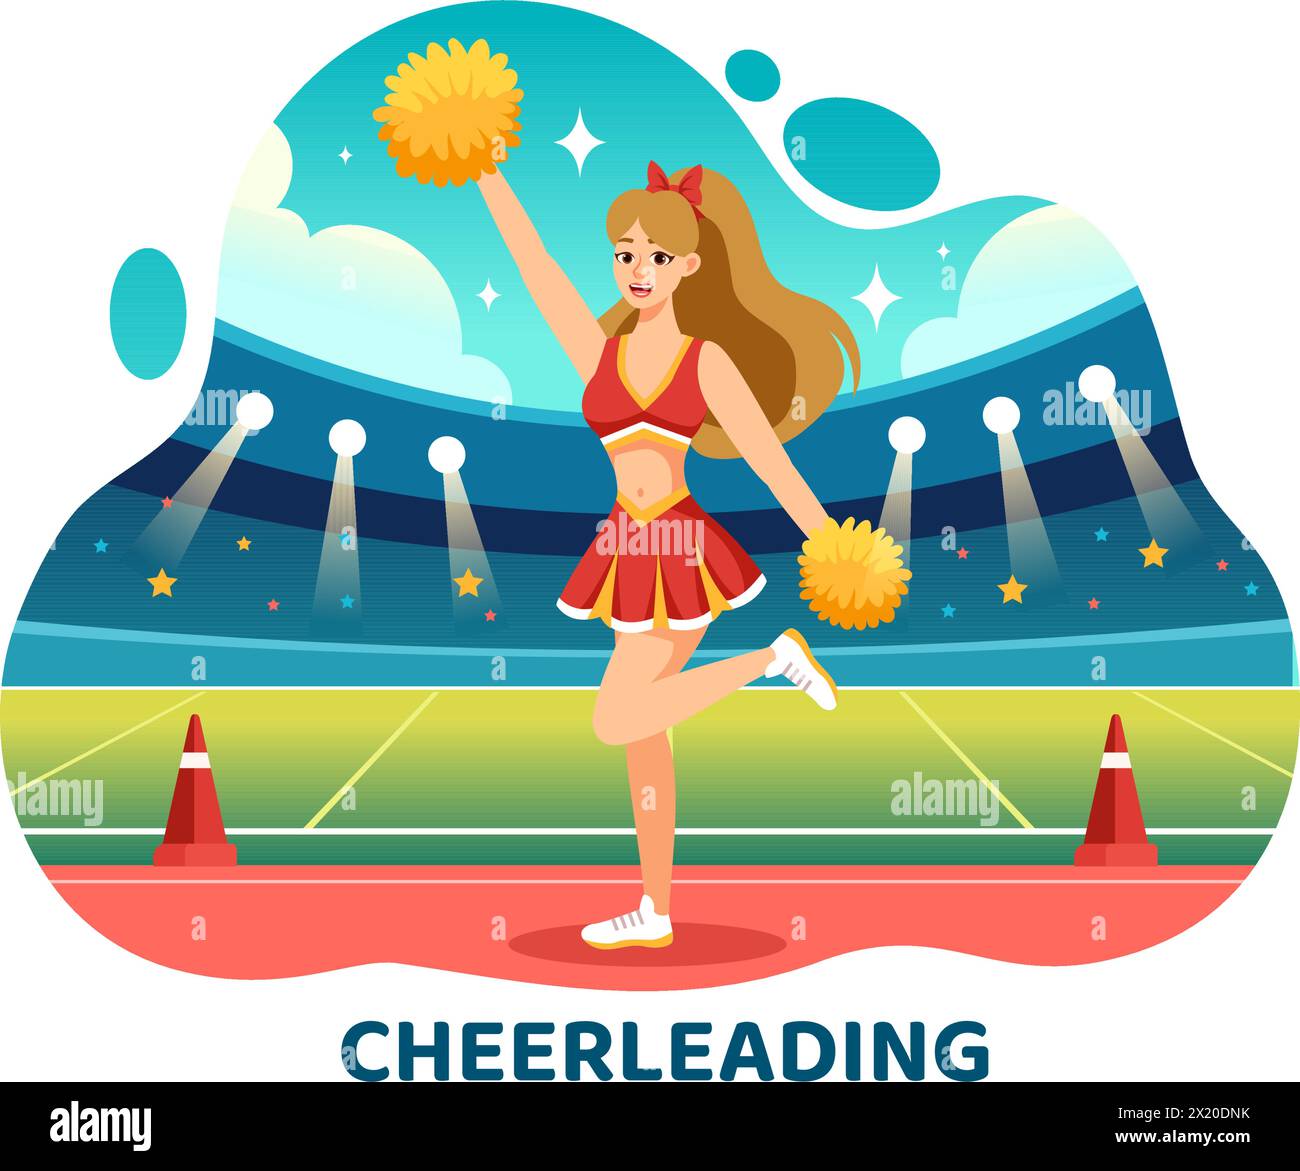 Cheerleader Girl Vector Illustration with Cheerleading Pom Poms of Dancing and Jumping to Support Team Sport durante la competizione su sfondo piatto Illustrazione Vettoriale